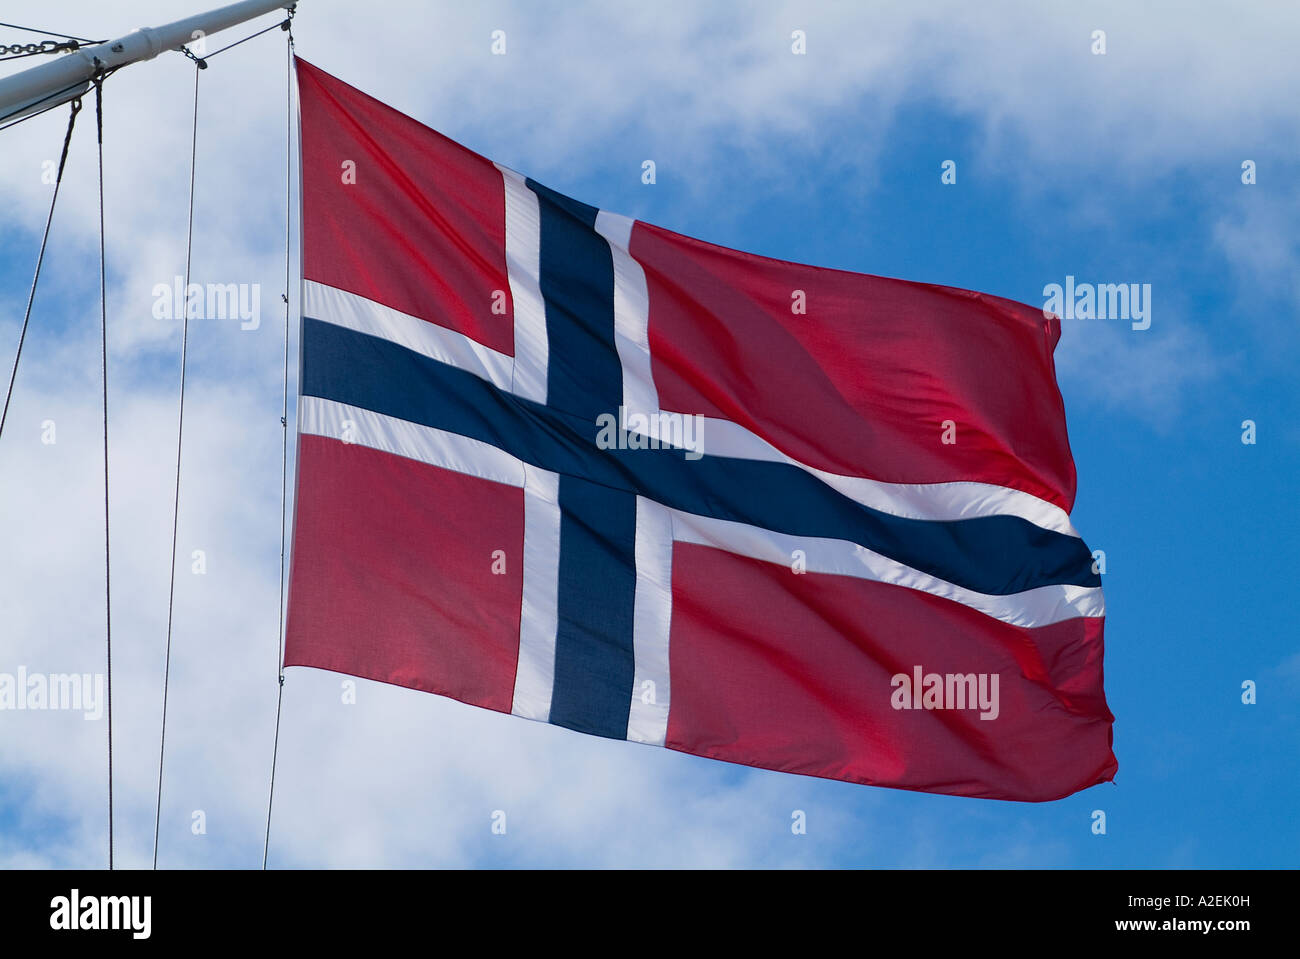 dh drapeau norvégien DRAPEAU NORVÉGIEN NORVÈGE fond rouge avec croix blanche et bleue ensign à bord du navire à voile mouche nation couleurs navires drapeaux Banque D'Images